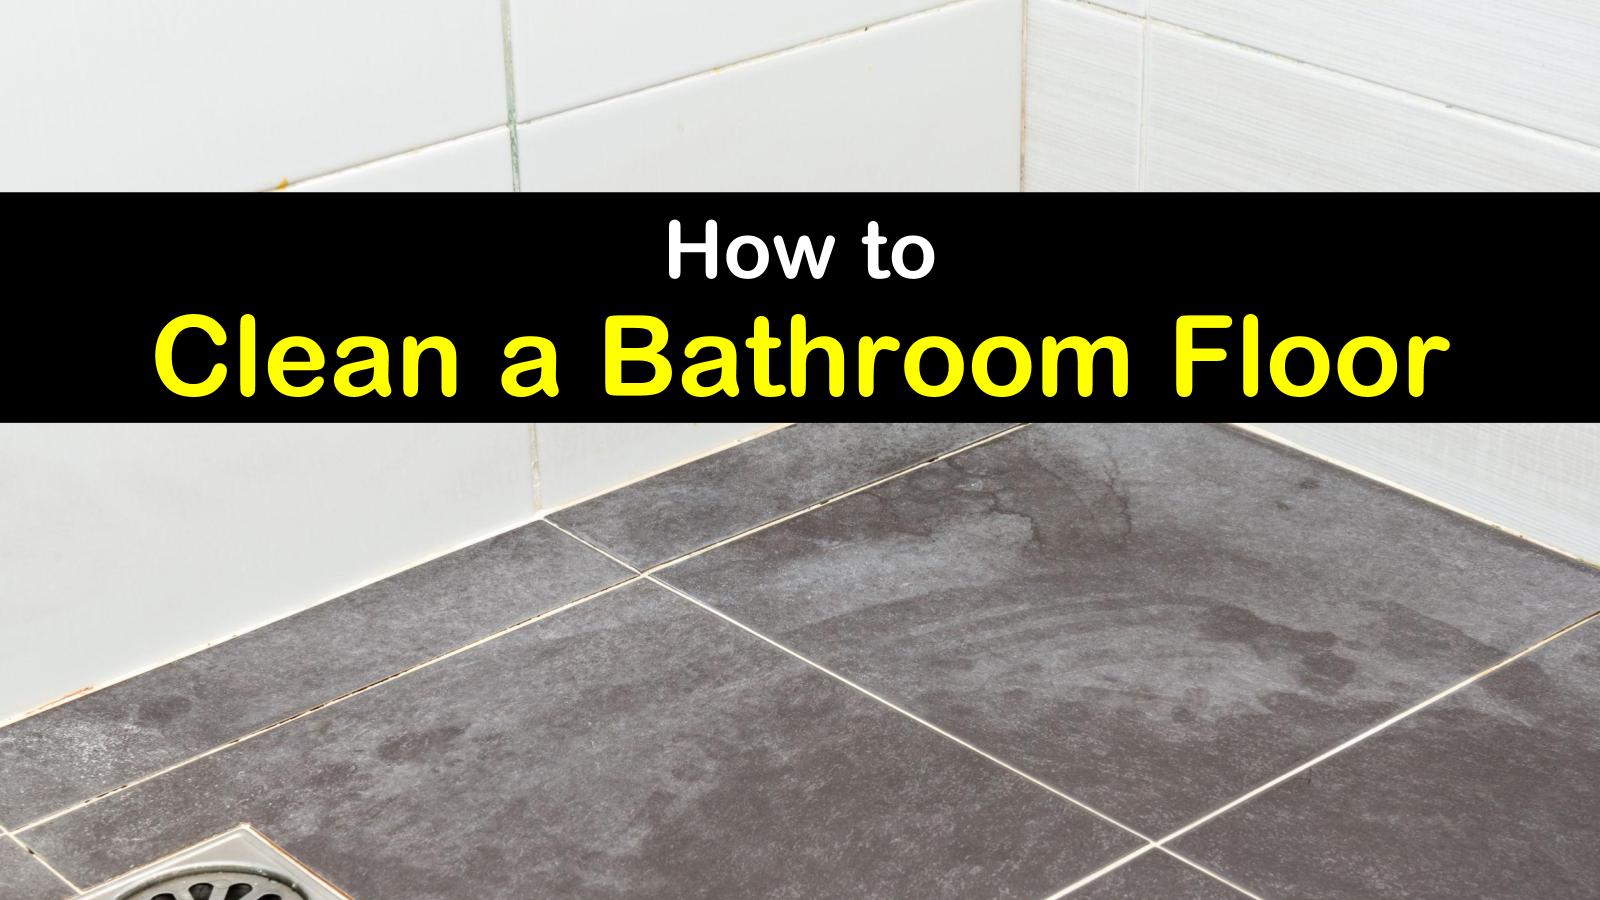 how to clean a bathroom floor titleimg1